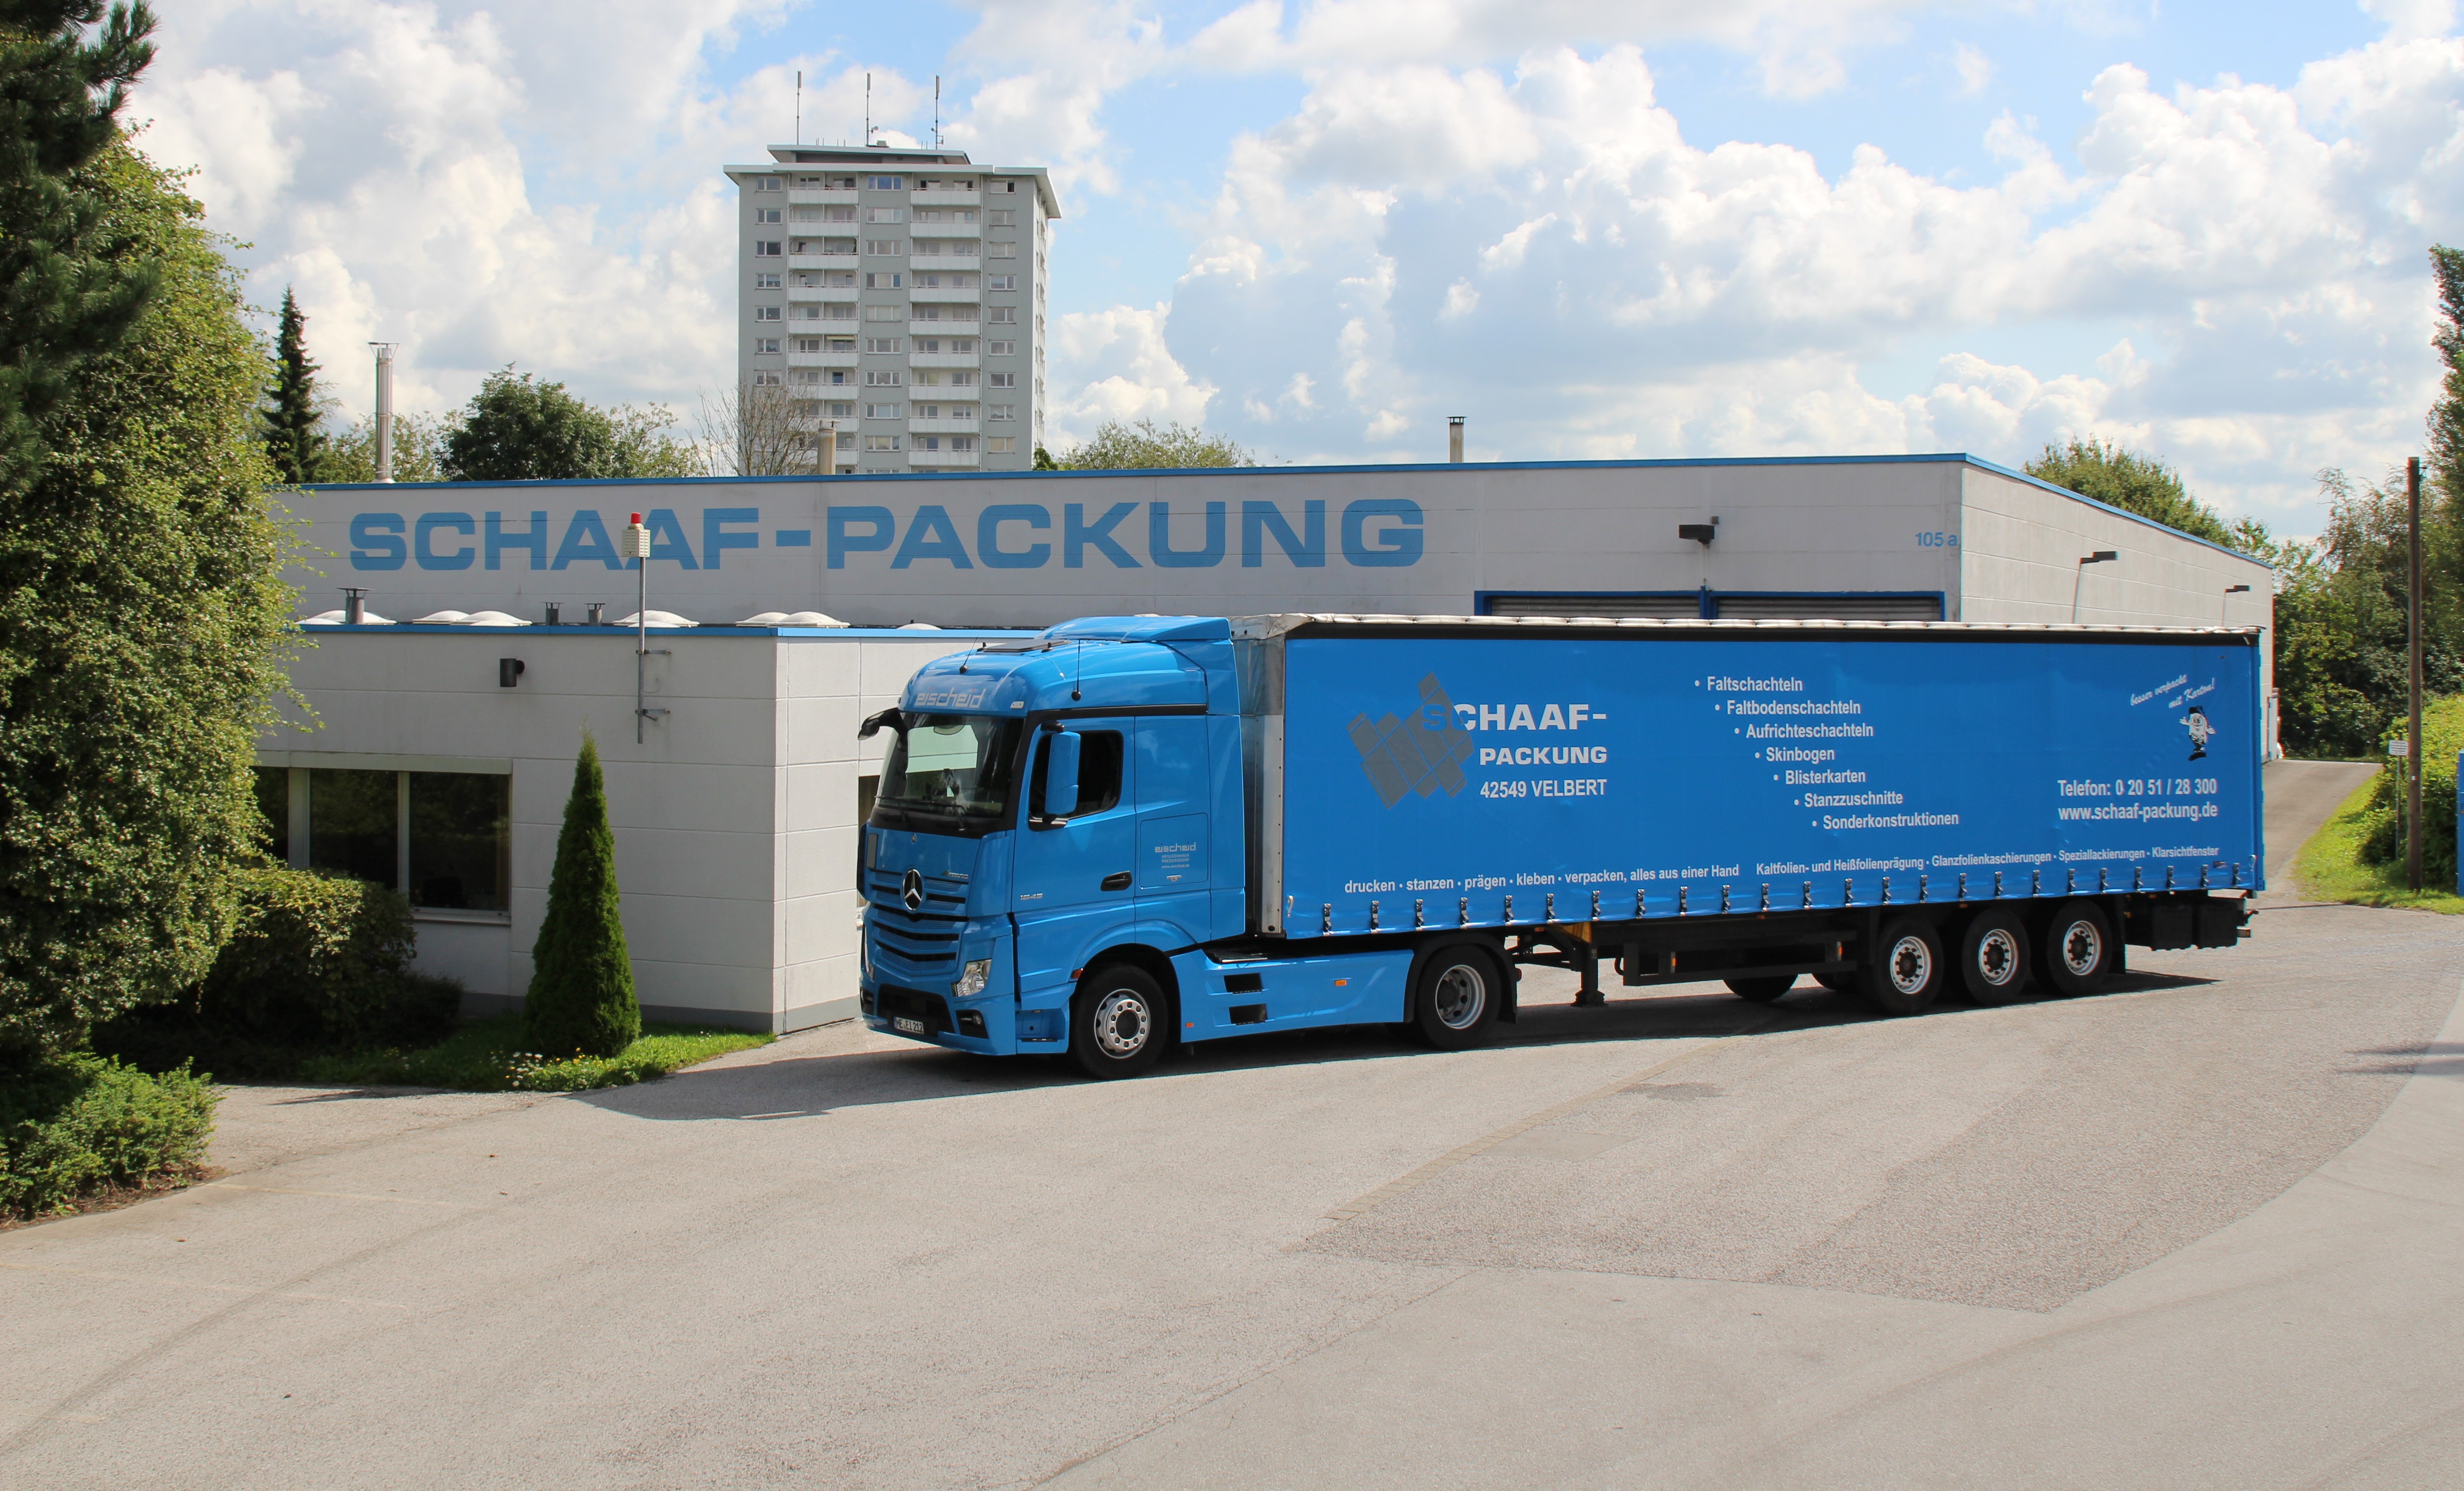 Neuer Business Partner für RWE: Die SCHAAF-Packung GmbH ist aus dem Hospitality-Bereich schon bekannt. (Foto: SCHAAF-Packung GmbH)